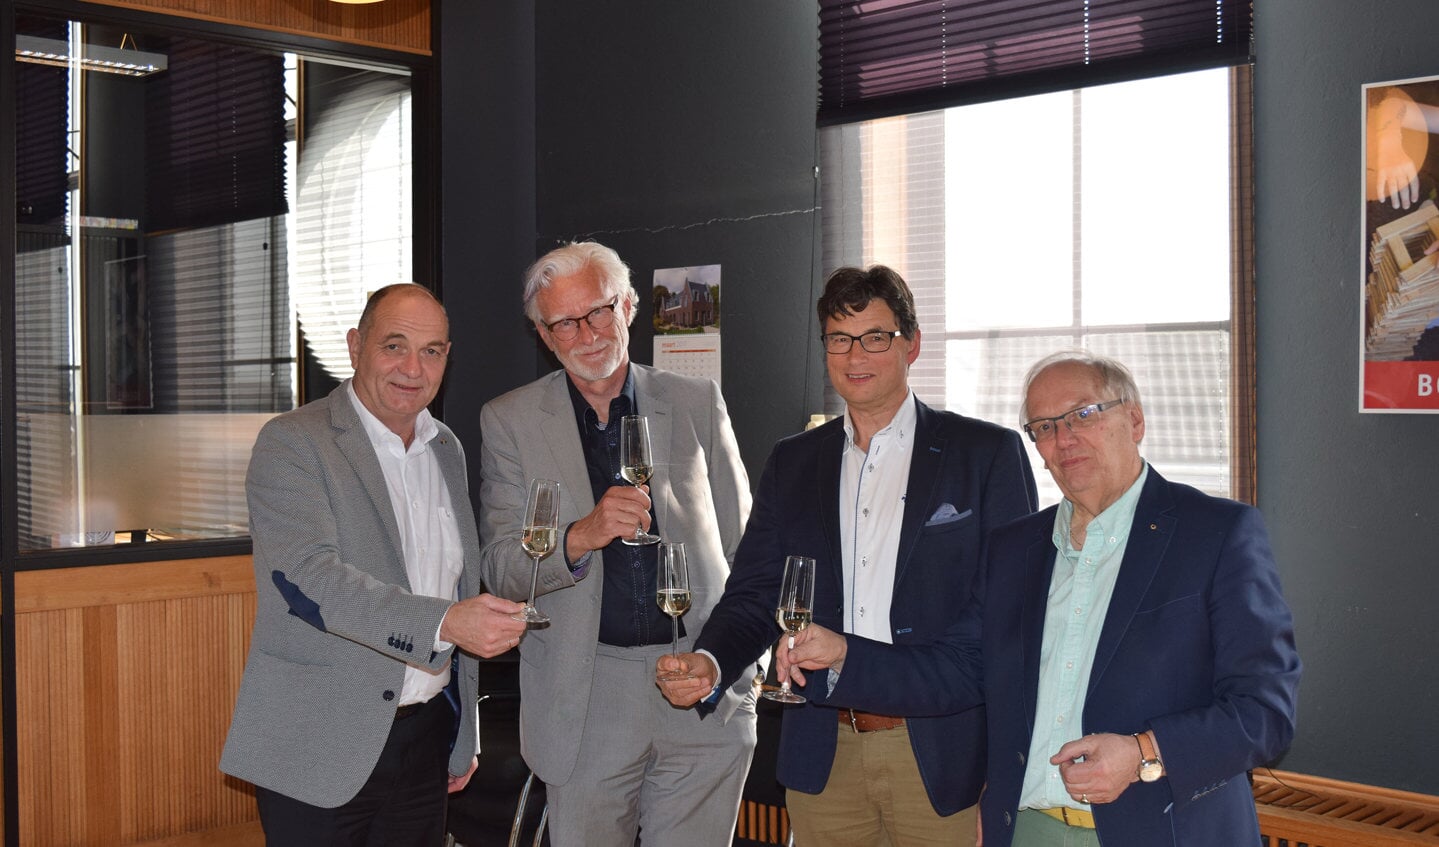 • De toast na afloop, met van links naar rechts Bert van der Lee, Bert-Jan Kollmer, Henk Mackloet en Bart Bruggeman.
